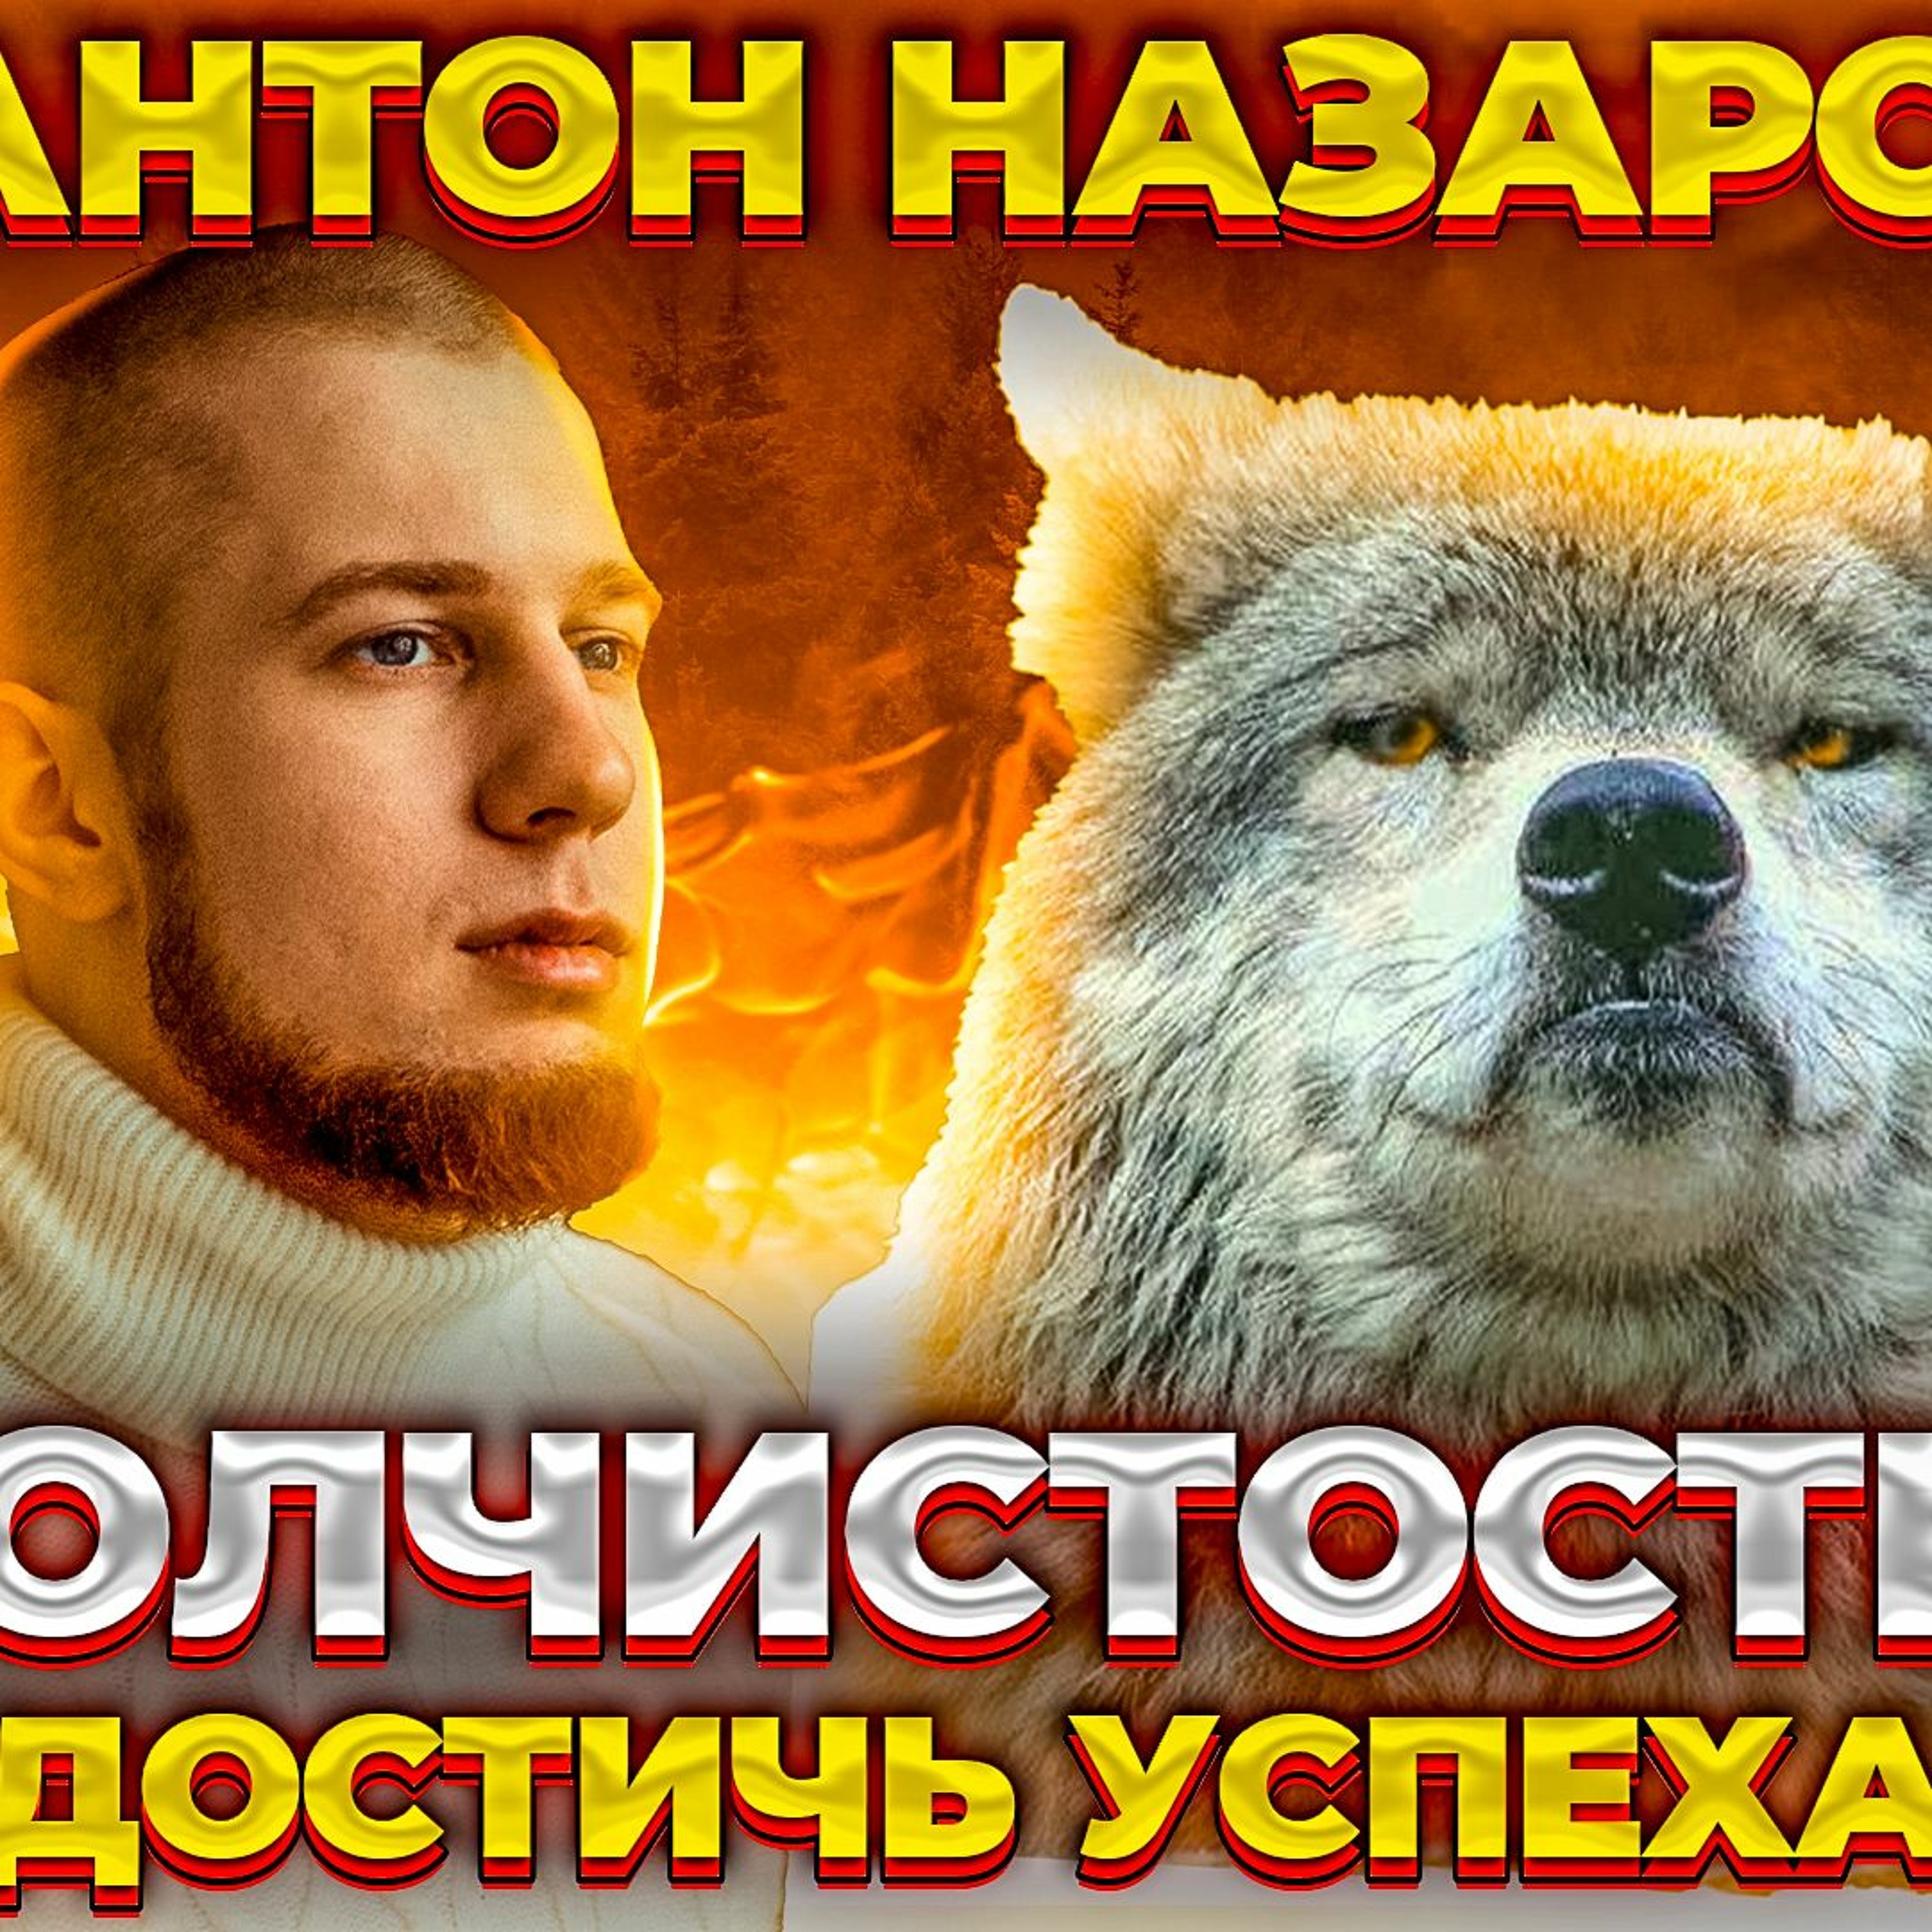 #52 - Антон Назаров: Волчистость. Как достичь успеха в IT